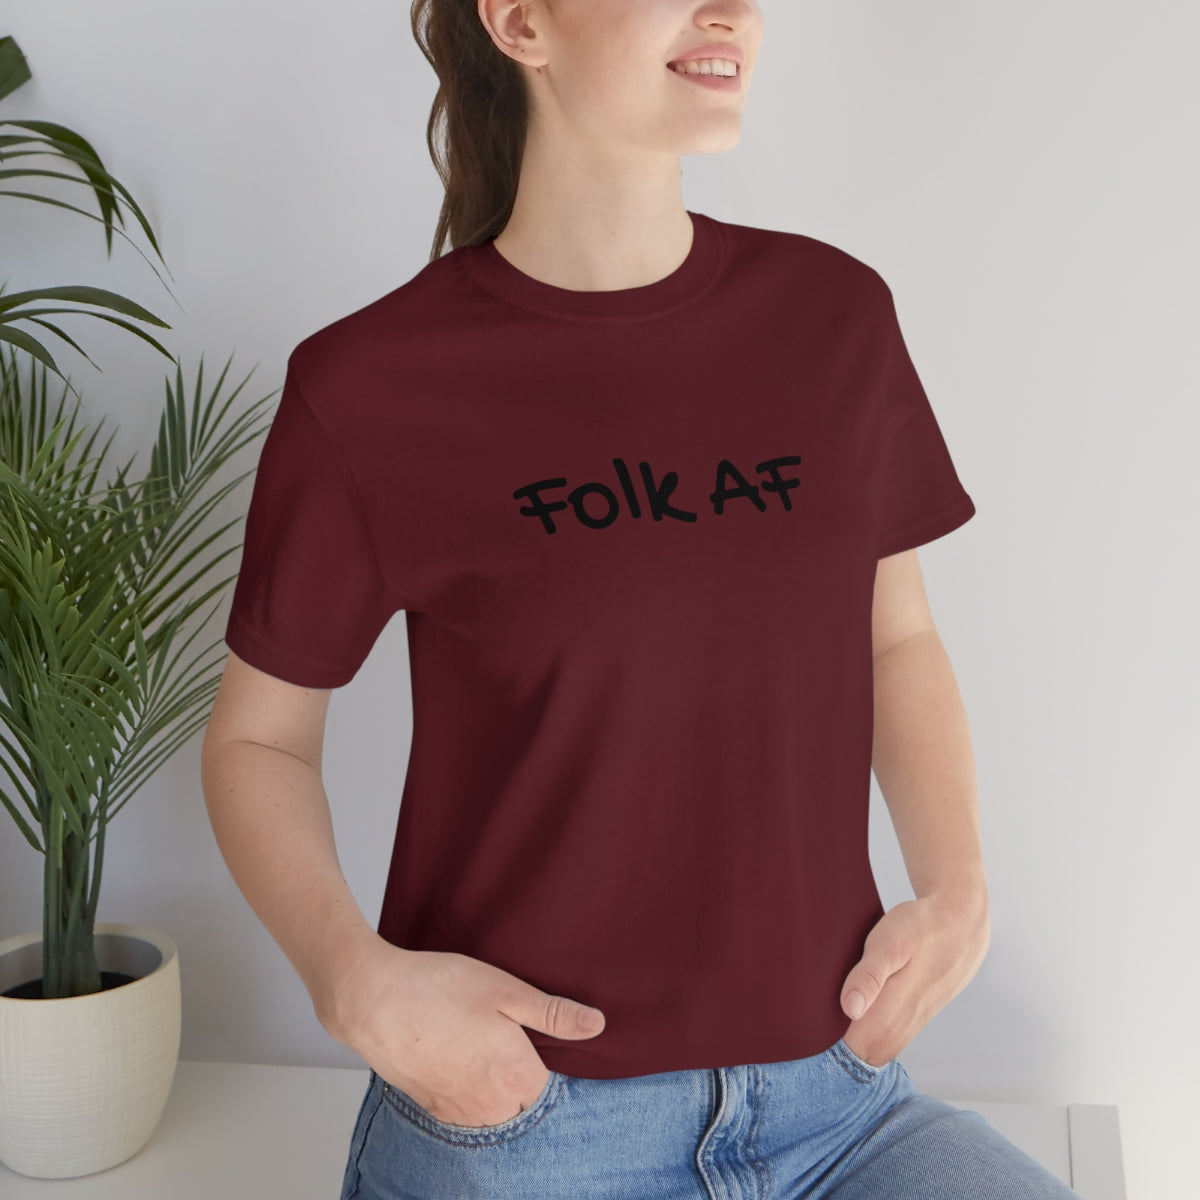 Folk AF (unisex)